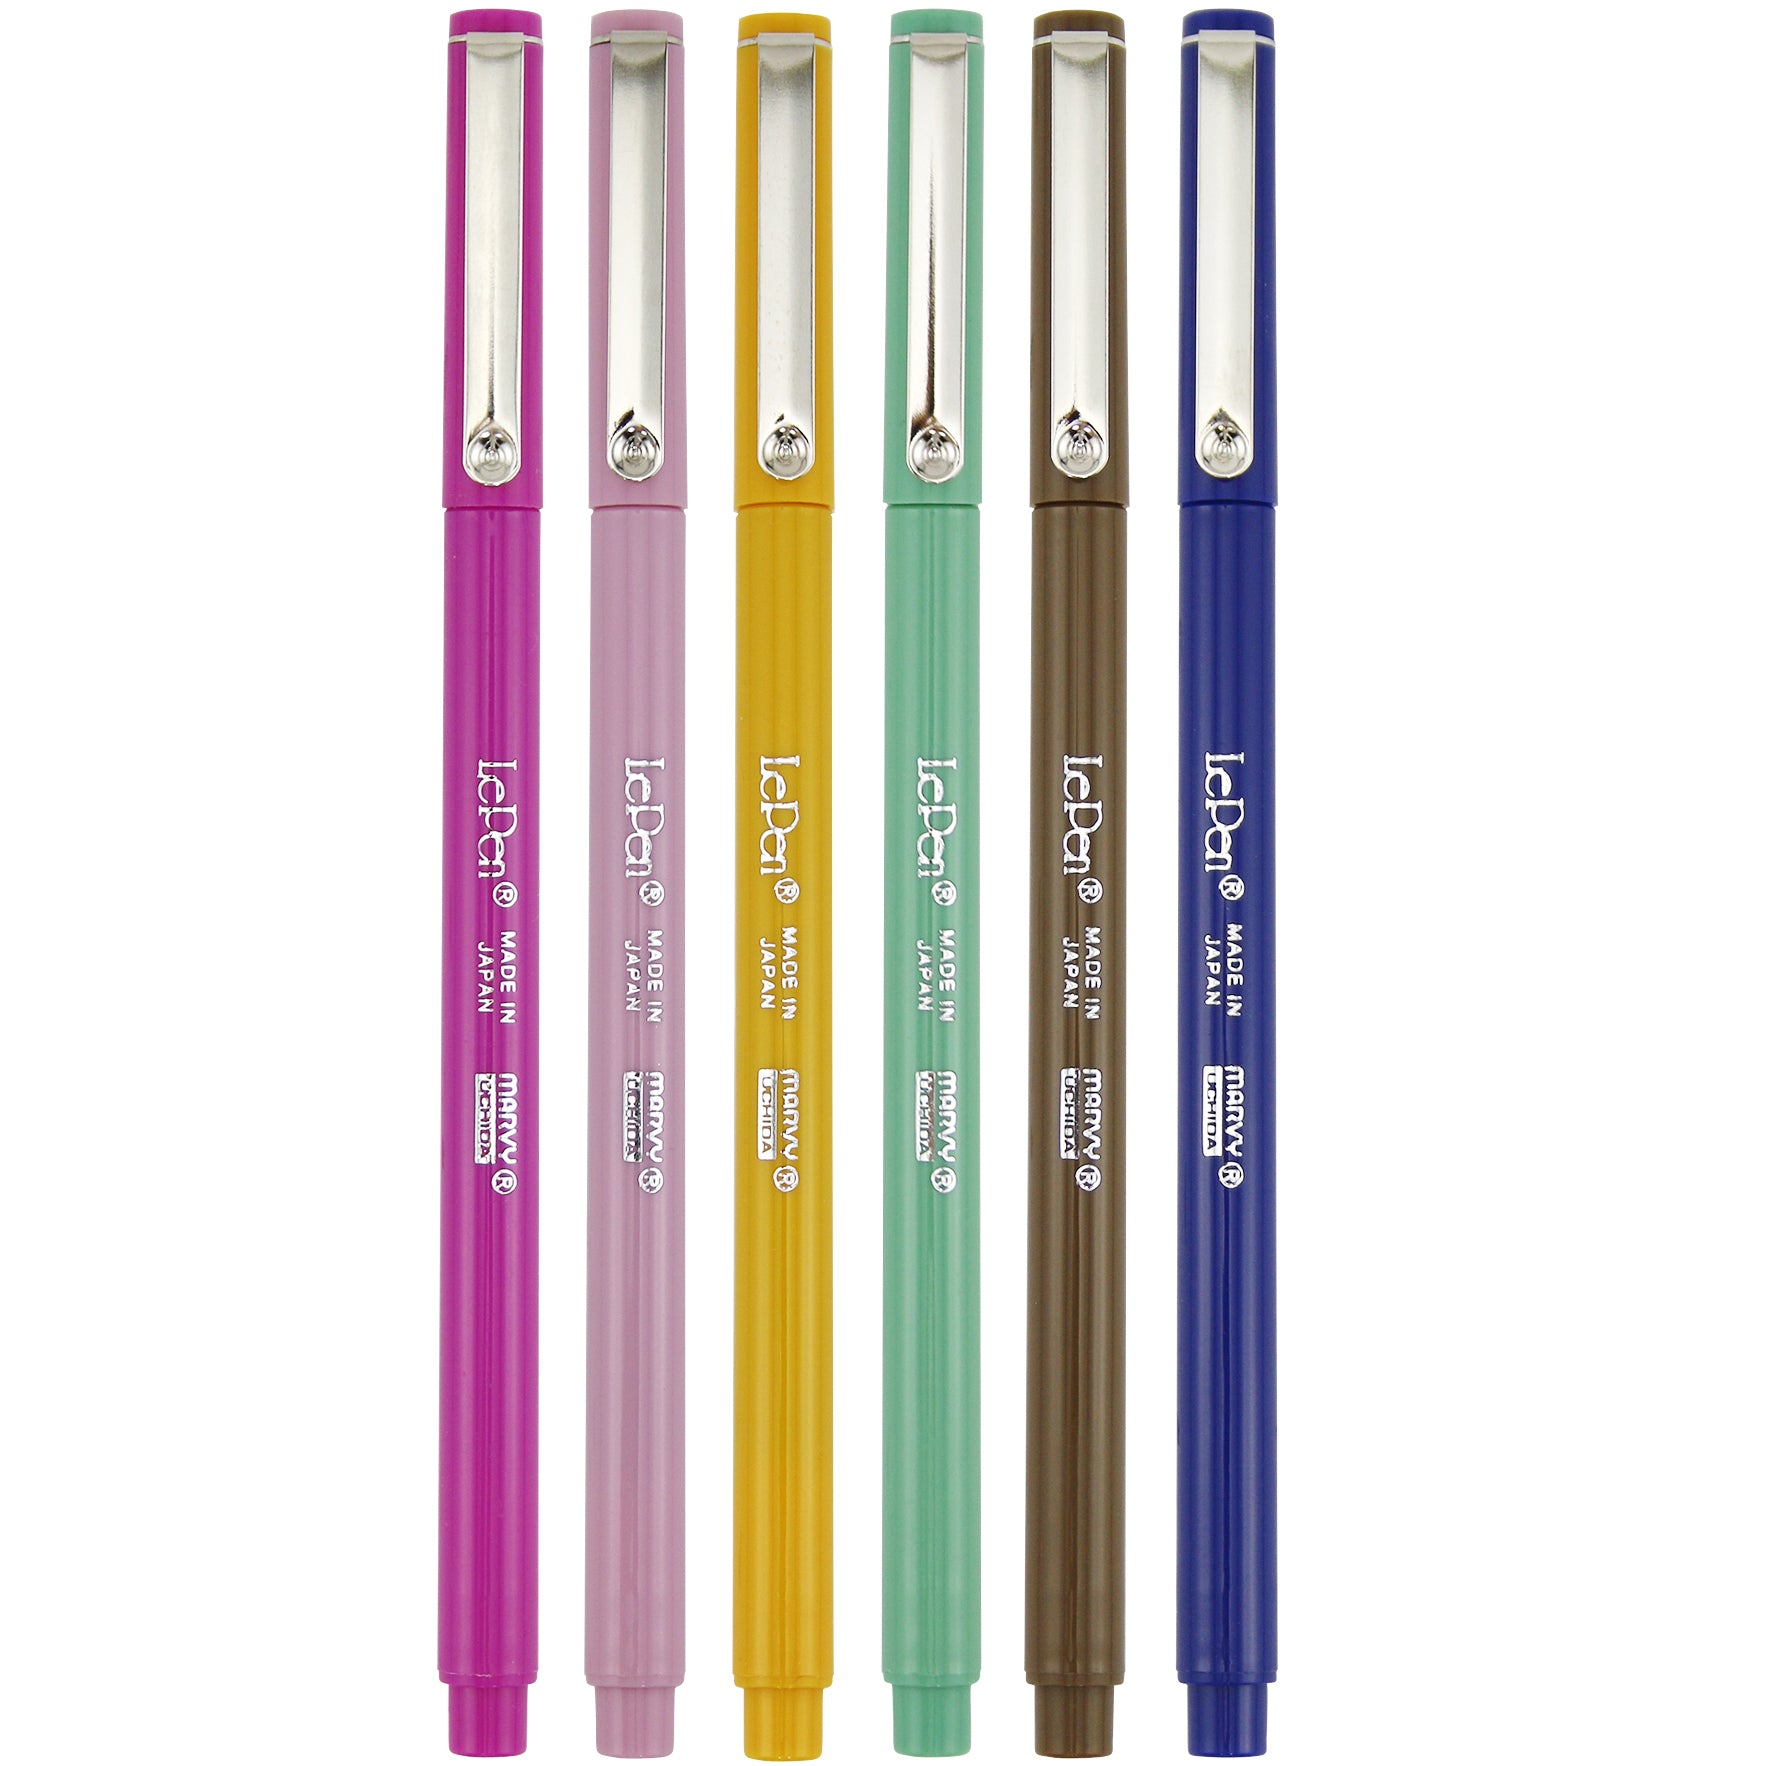 Uchida 430010A , Le Pen, 0.3 Millimeter point, Pen Set, 10 Pack, Multicolor